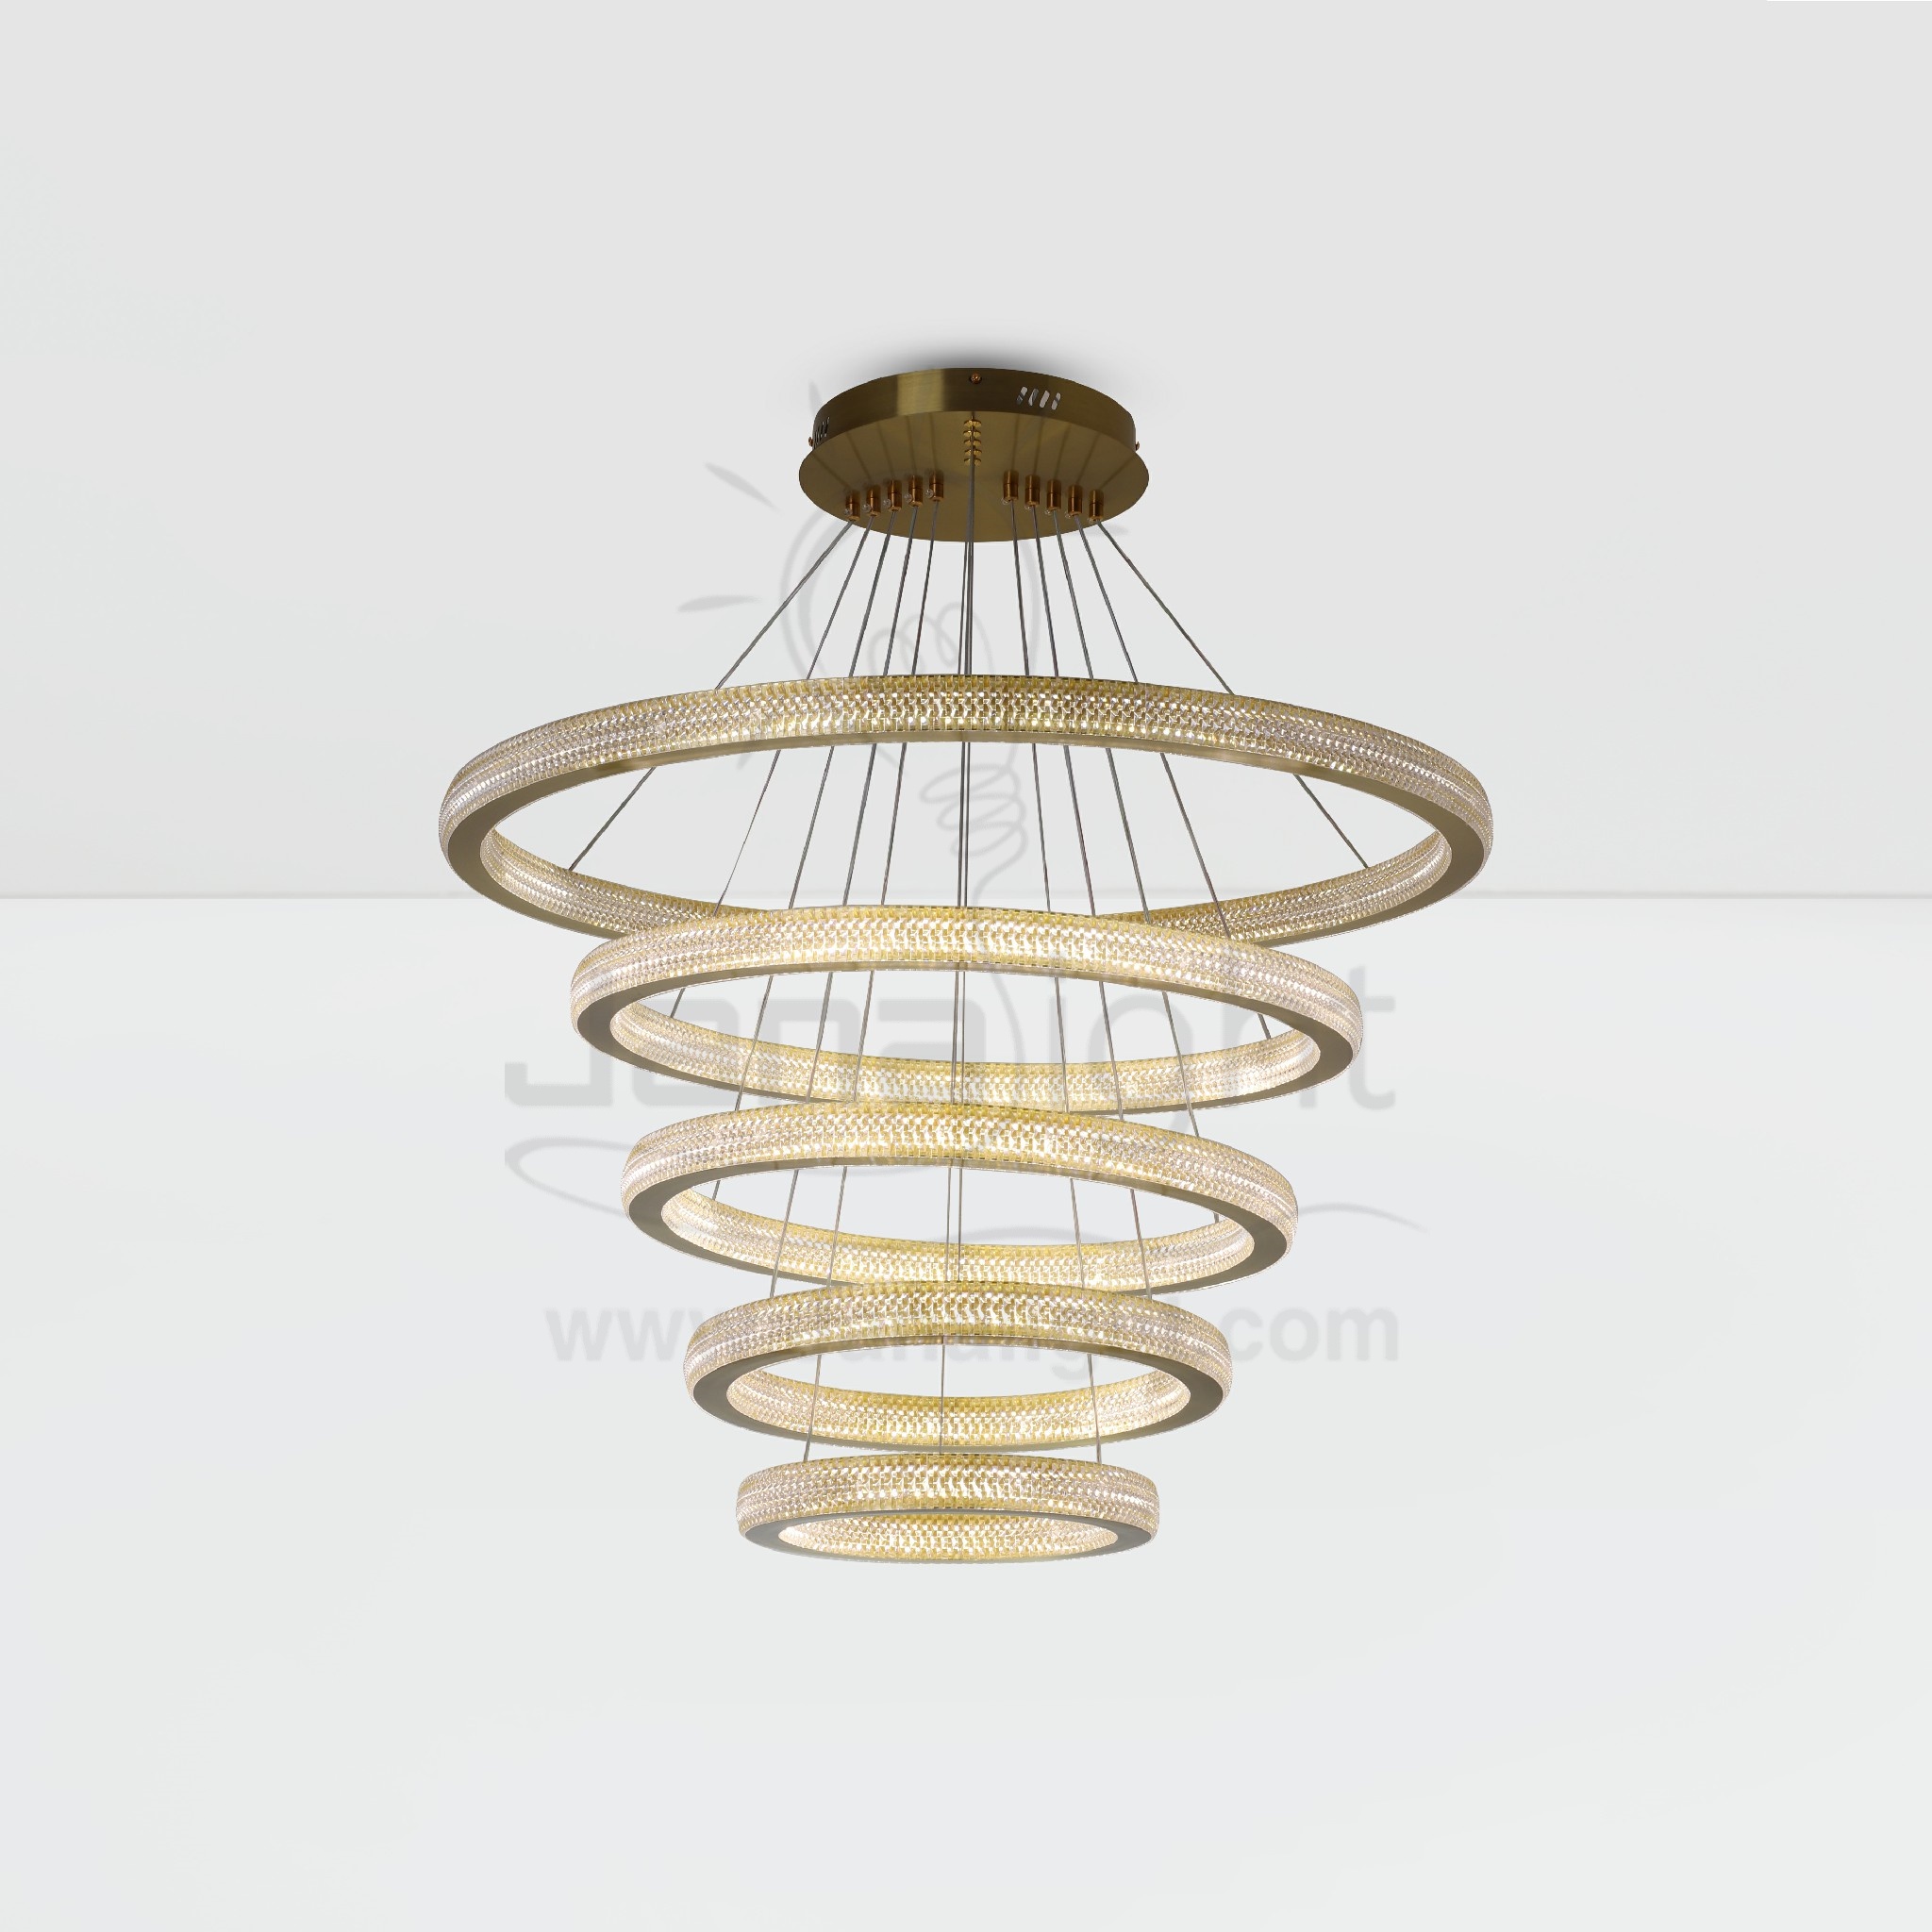 دلاية ليد خمس حلقات اطار شكل كريستال Modern luminaire hanglamp ceiling pendant light led chandeliers crystal acrylic gold 5 circular ring